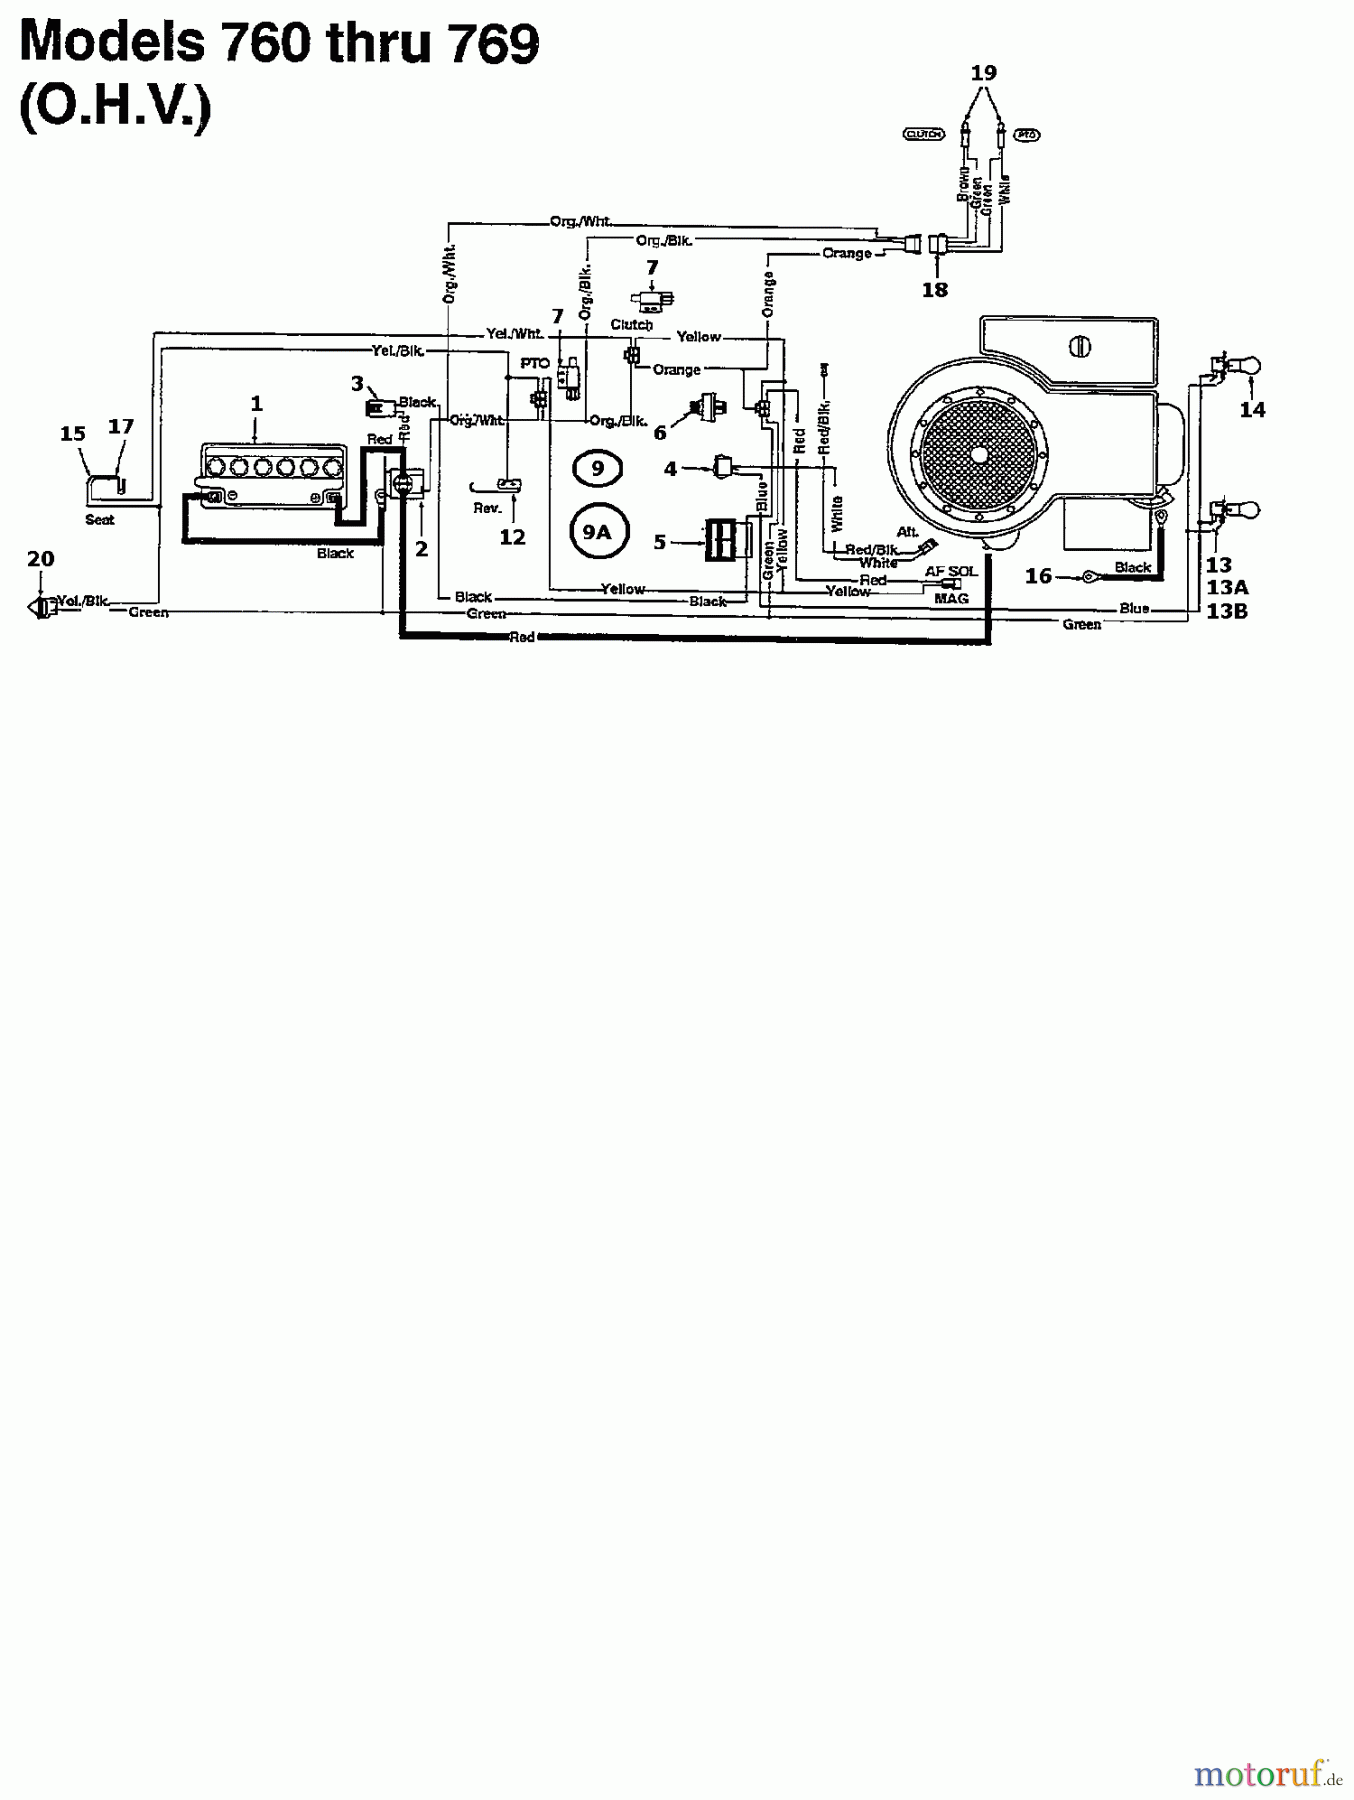  Gutbrod Rasentraktoren Sprint 2000 04200.01  (1995) Schaltplan für O.H.V.